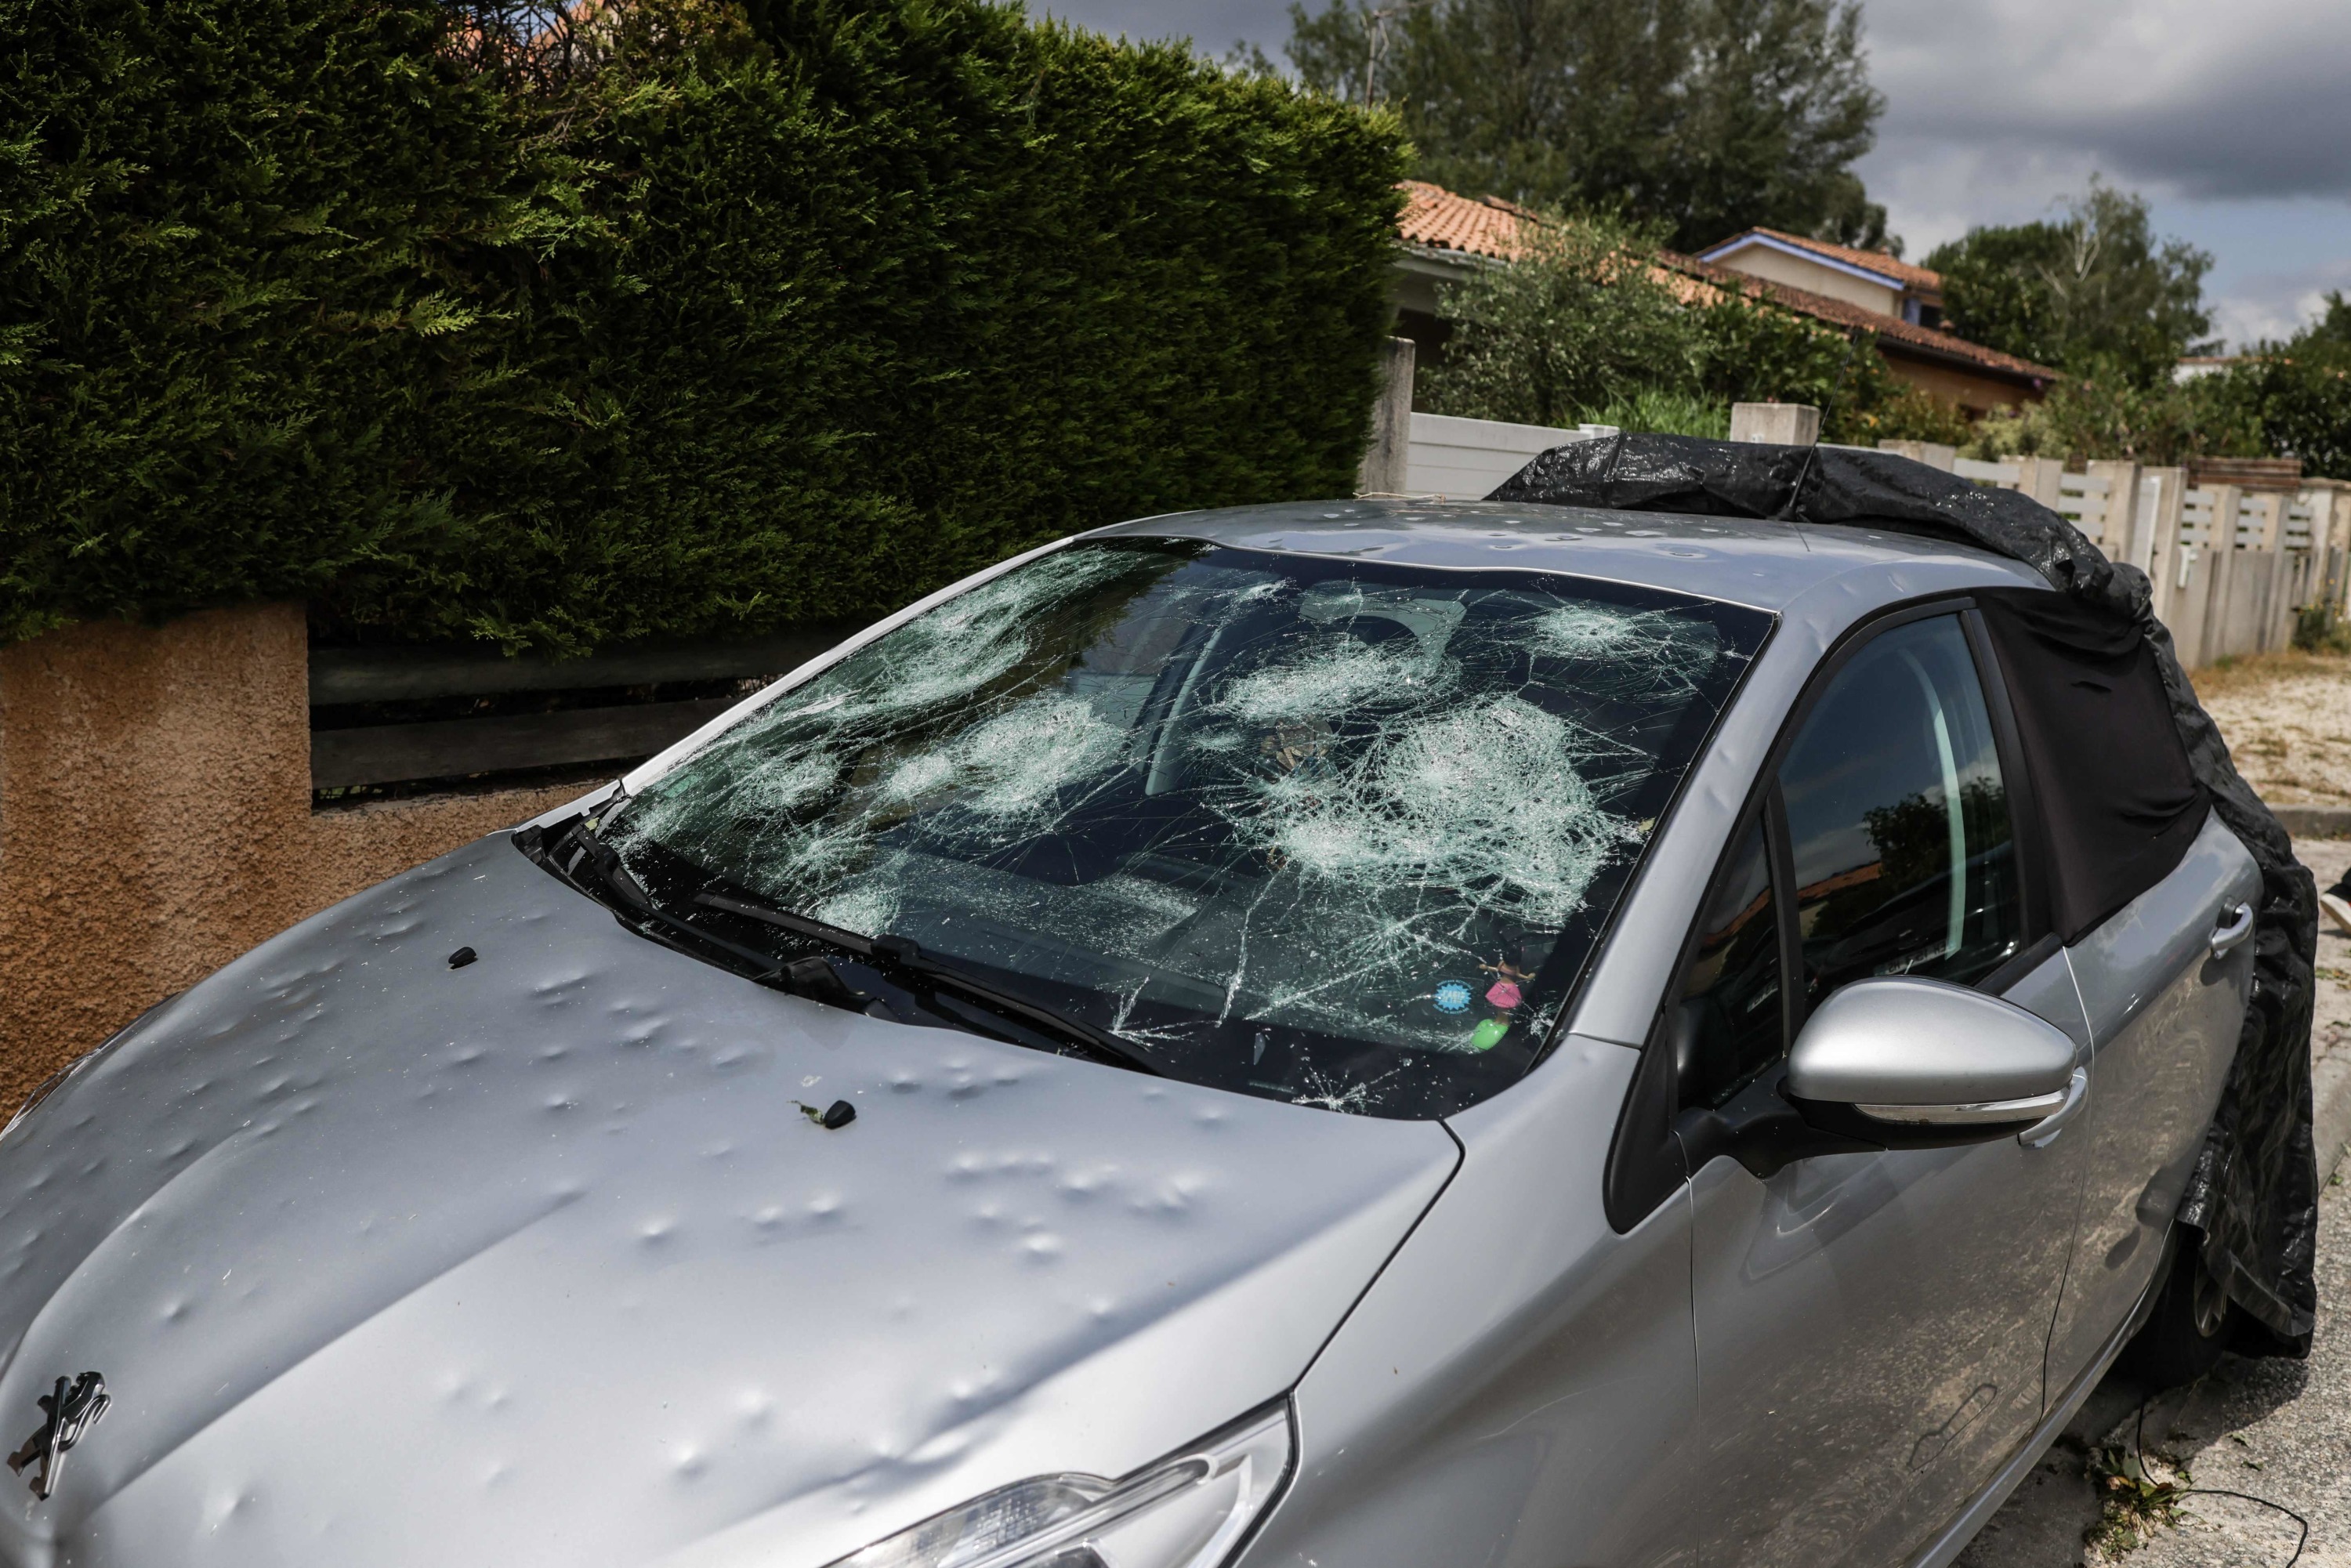 Orages, grêle, pluie : comment obtenir une indemnisation en cas de dégâts  sur son logement ou sa voiture - France Bleu